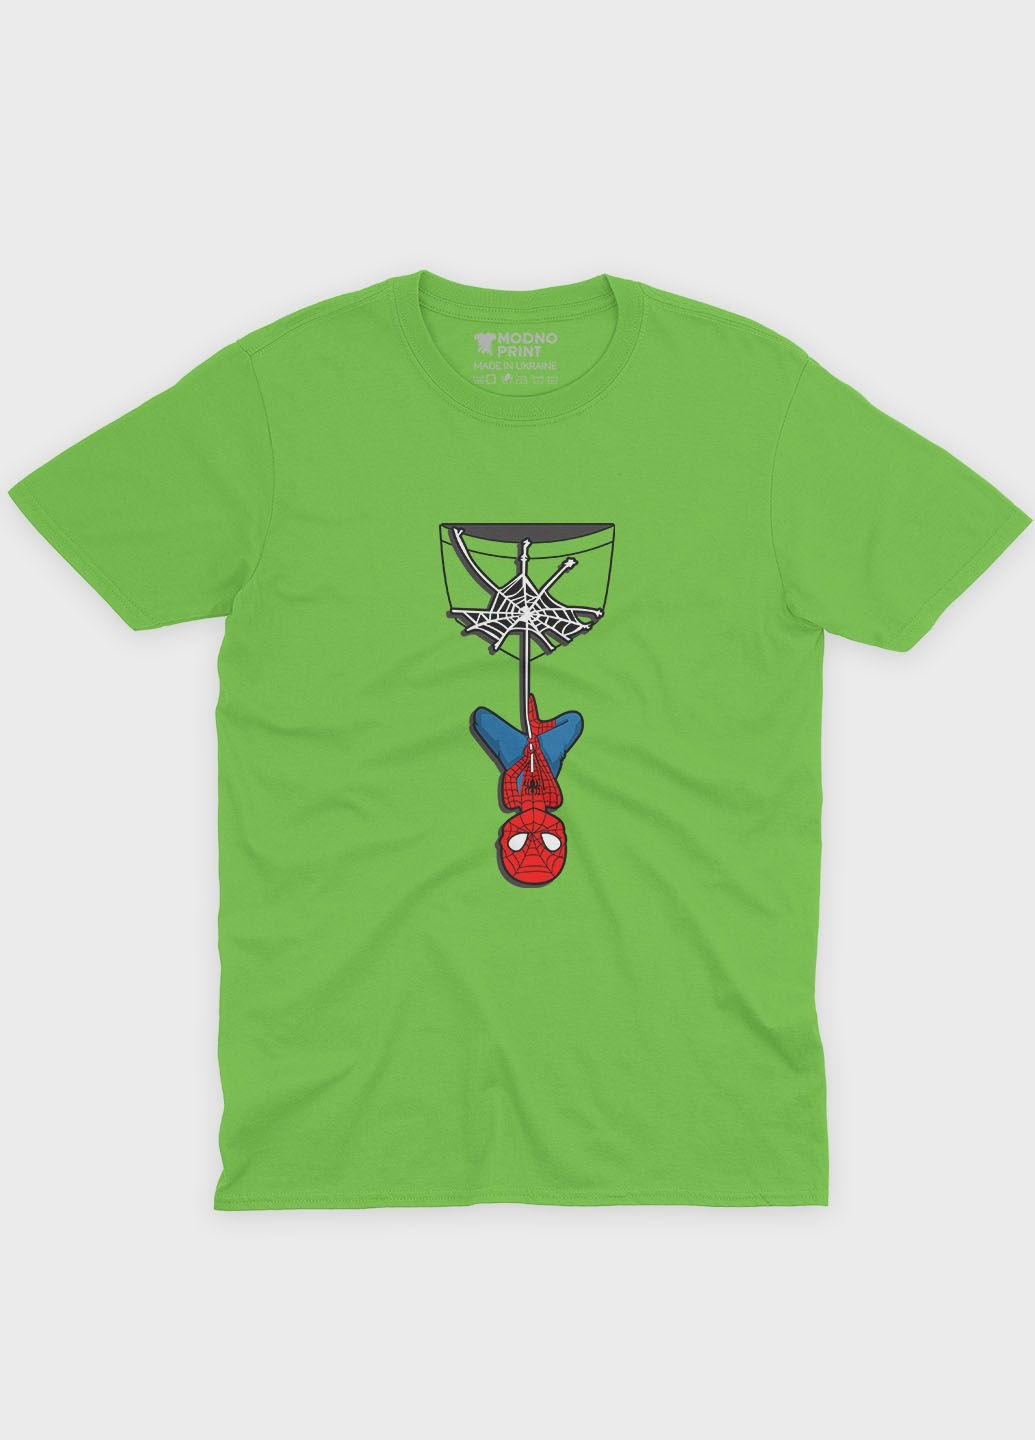 Салатовая демисезонная футболка для мальчика с принтом супергероя - человек-паук (ts001-1-kiw-006-014-039-b) Modno